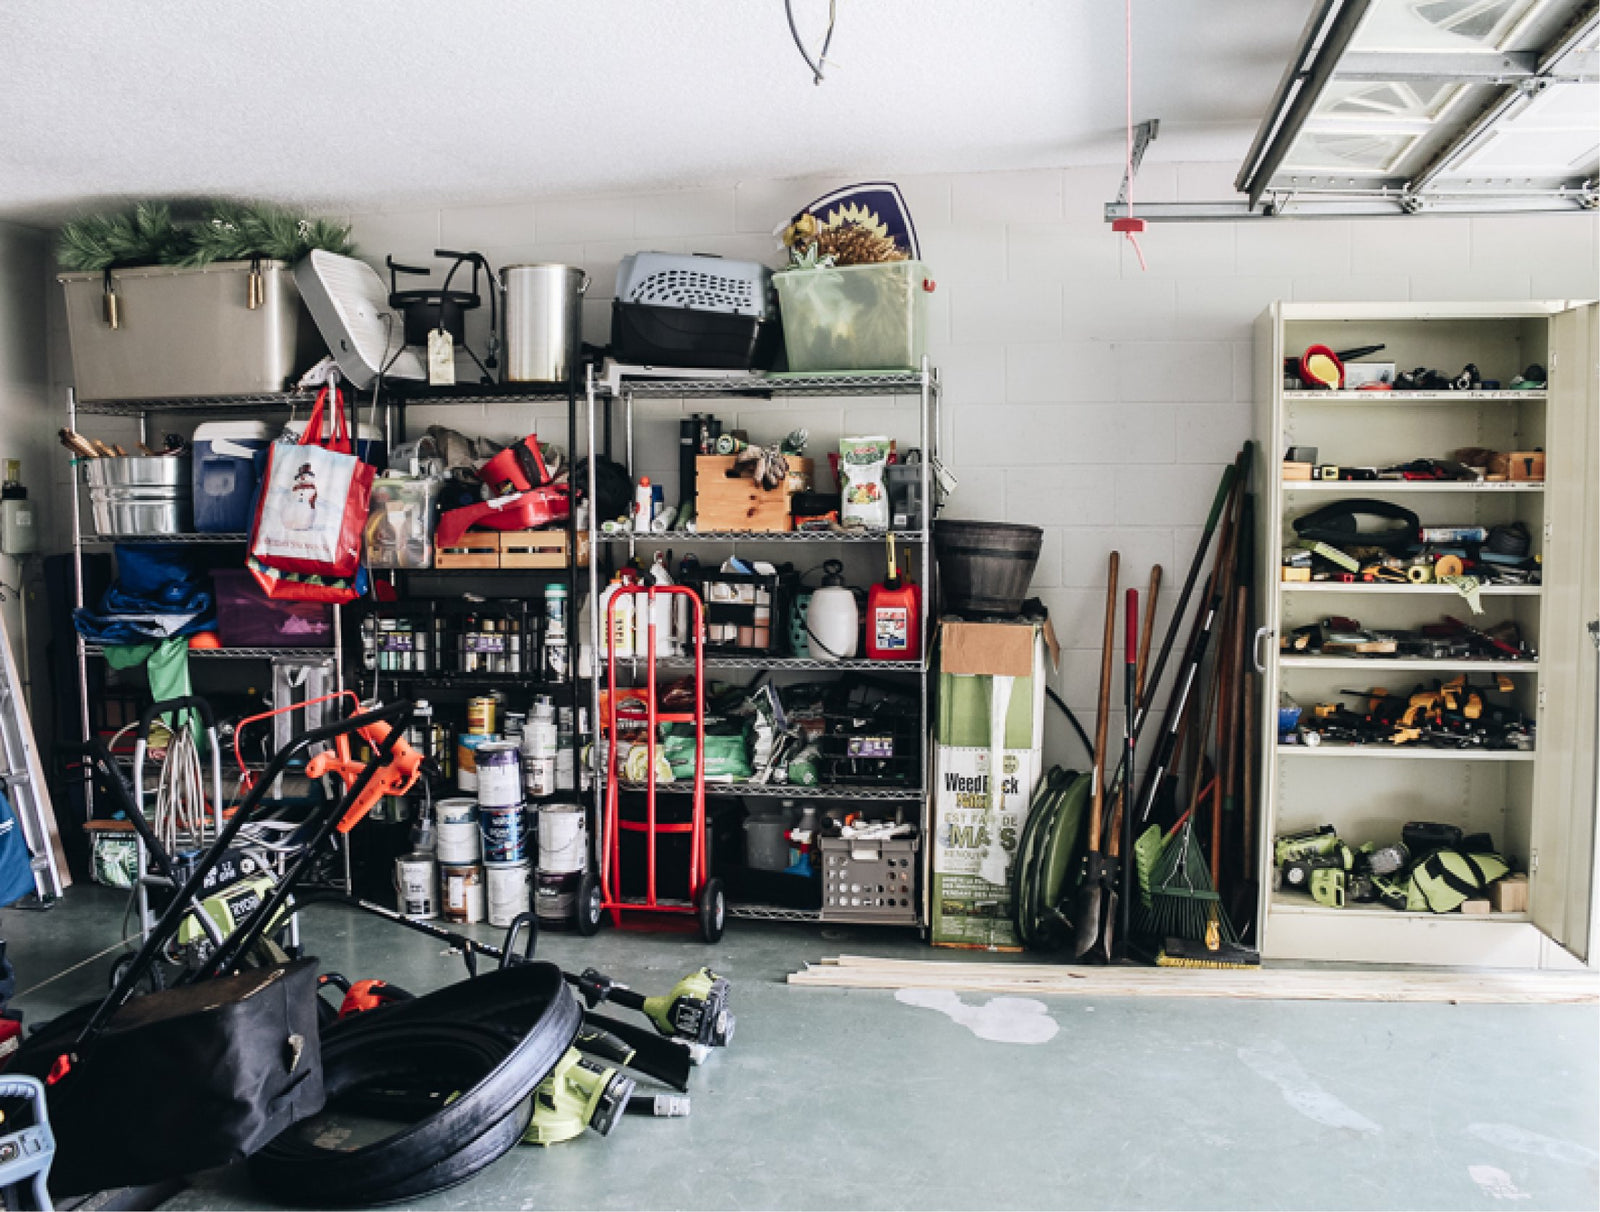 15 Best Garage Organizers: Cabinets, Bins, Shelving Storage